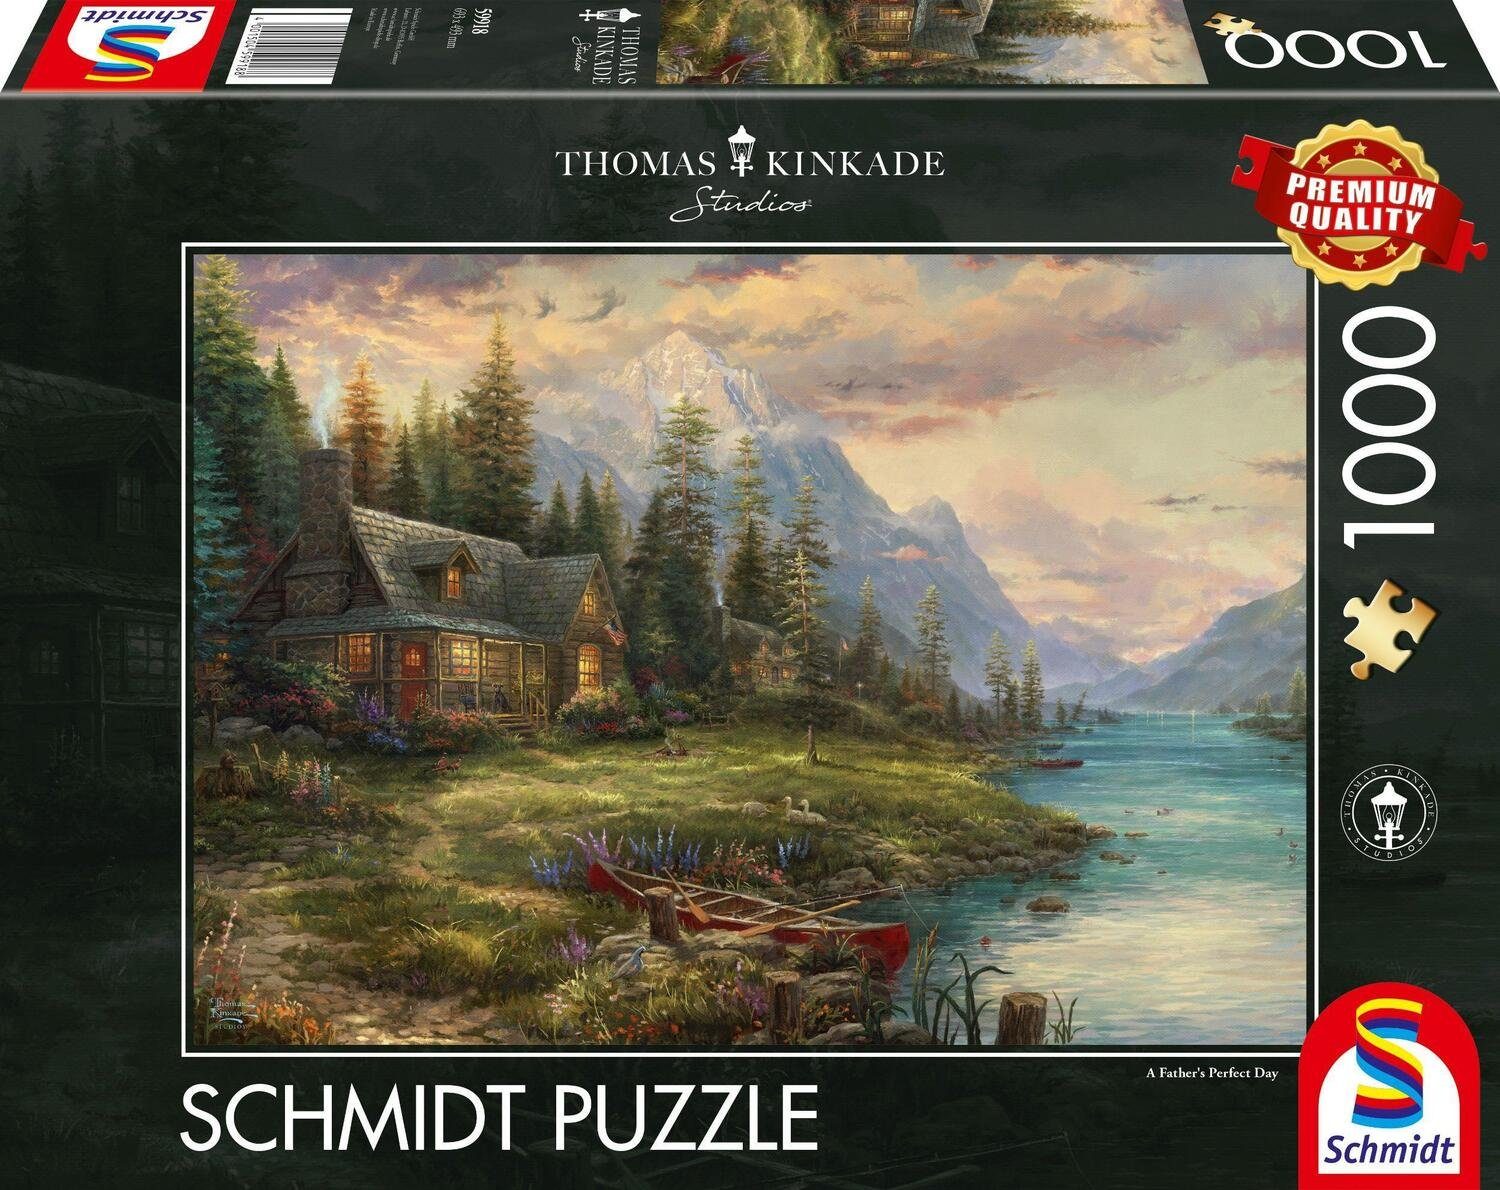 Schmidt Spiele Puzzle Ausflug am Vatertag Puzzle 1.000 Teile, 1000 Puzzleteile